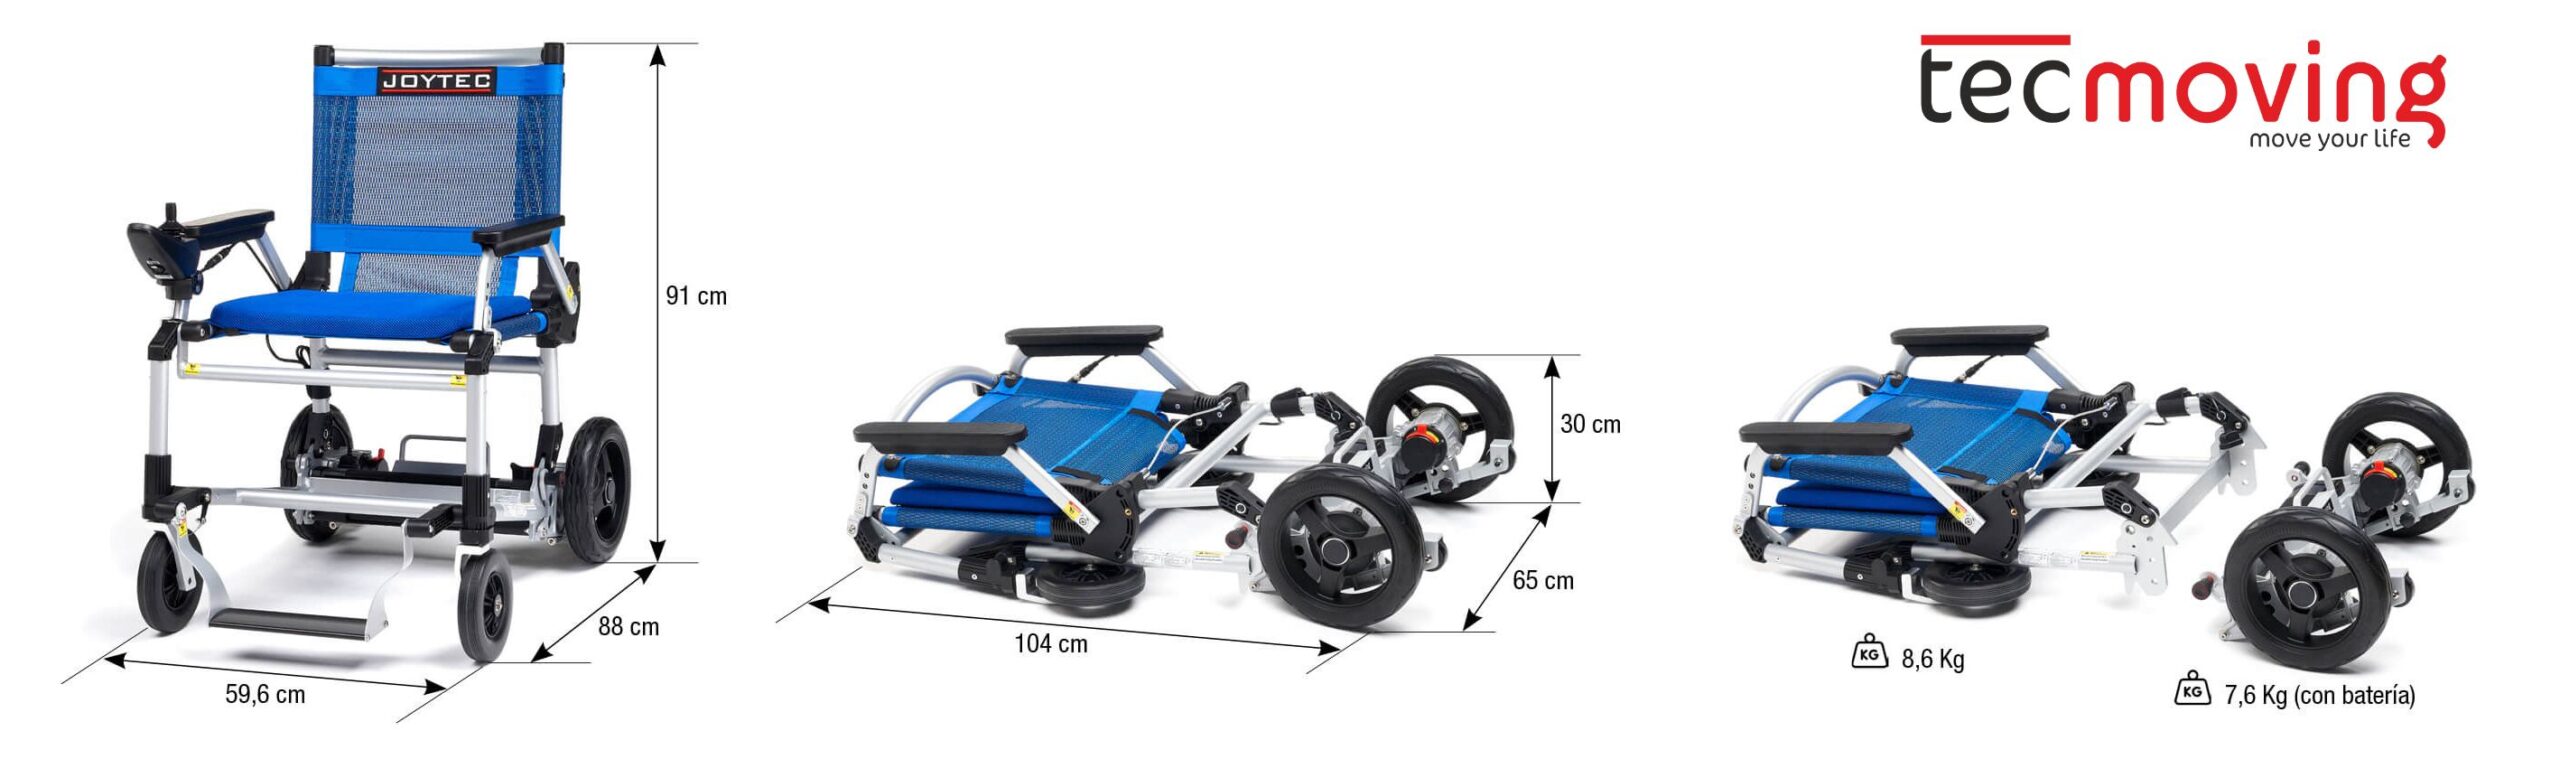 Misure e peso della sedia a rotelle elettrica pieghevole Joytec Ultralight